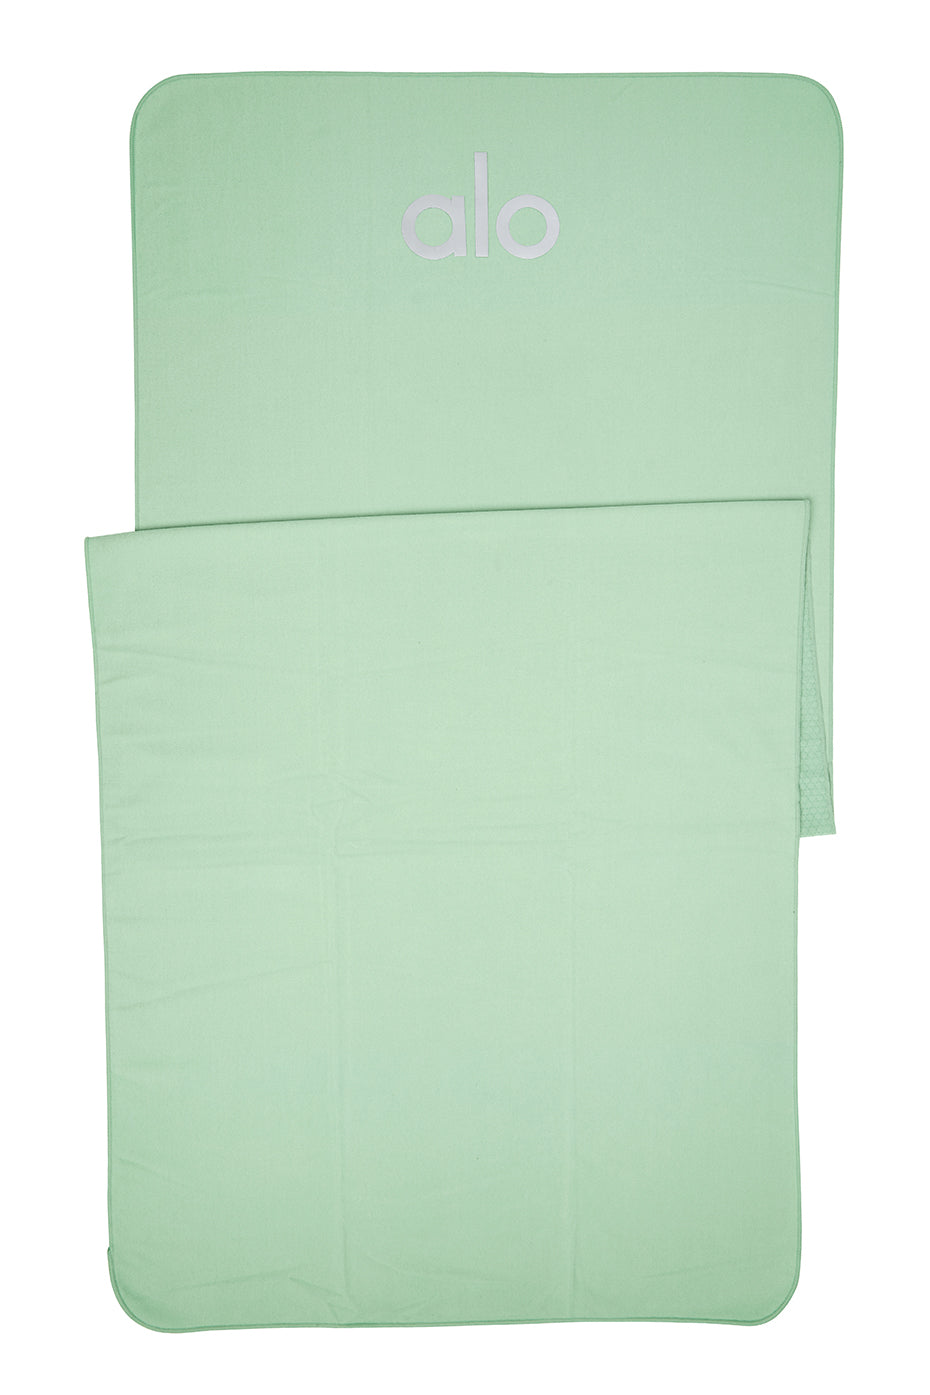 Alo Yoga No-Slip Towel Mat